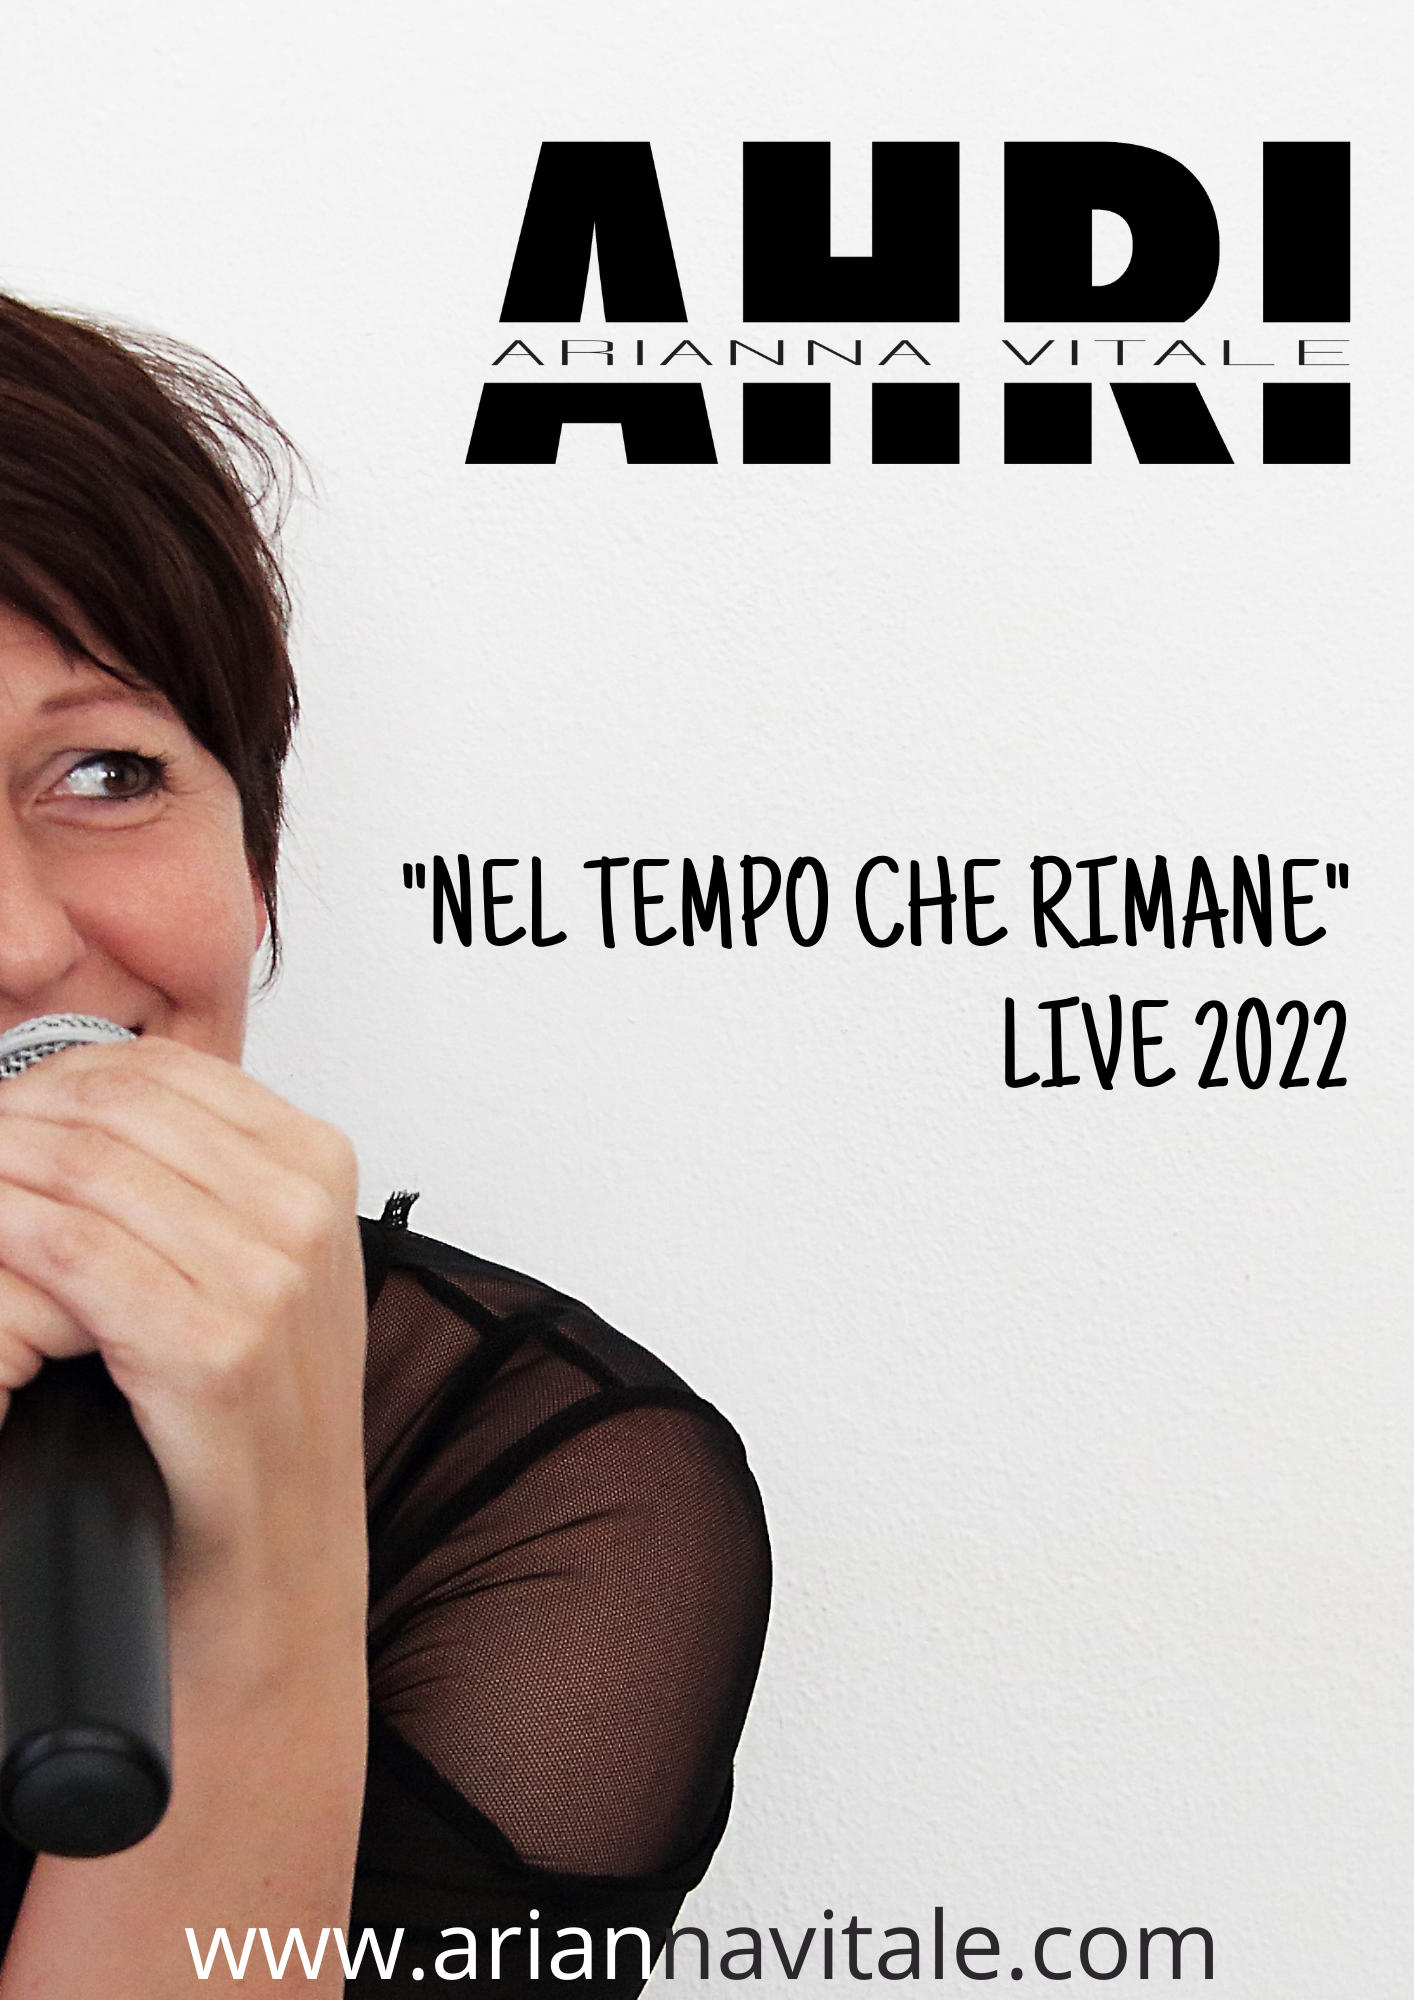 AHRI Arianna Vitale in concerto a Crema presenta l'EP Nel tempo che rimane